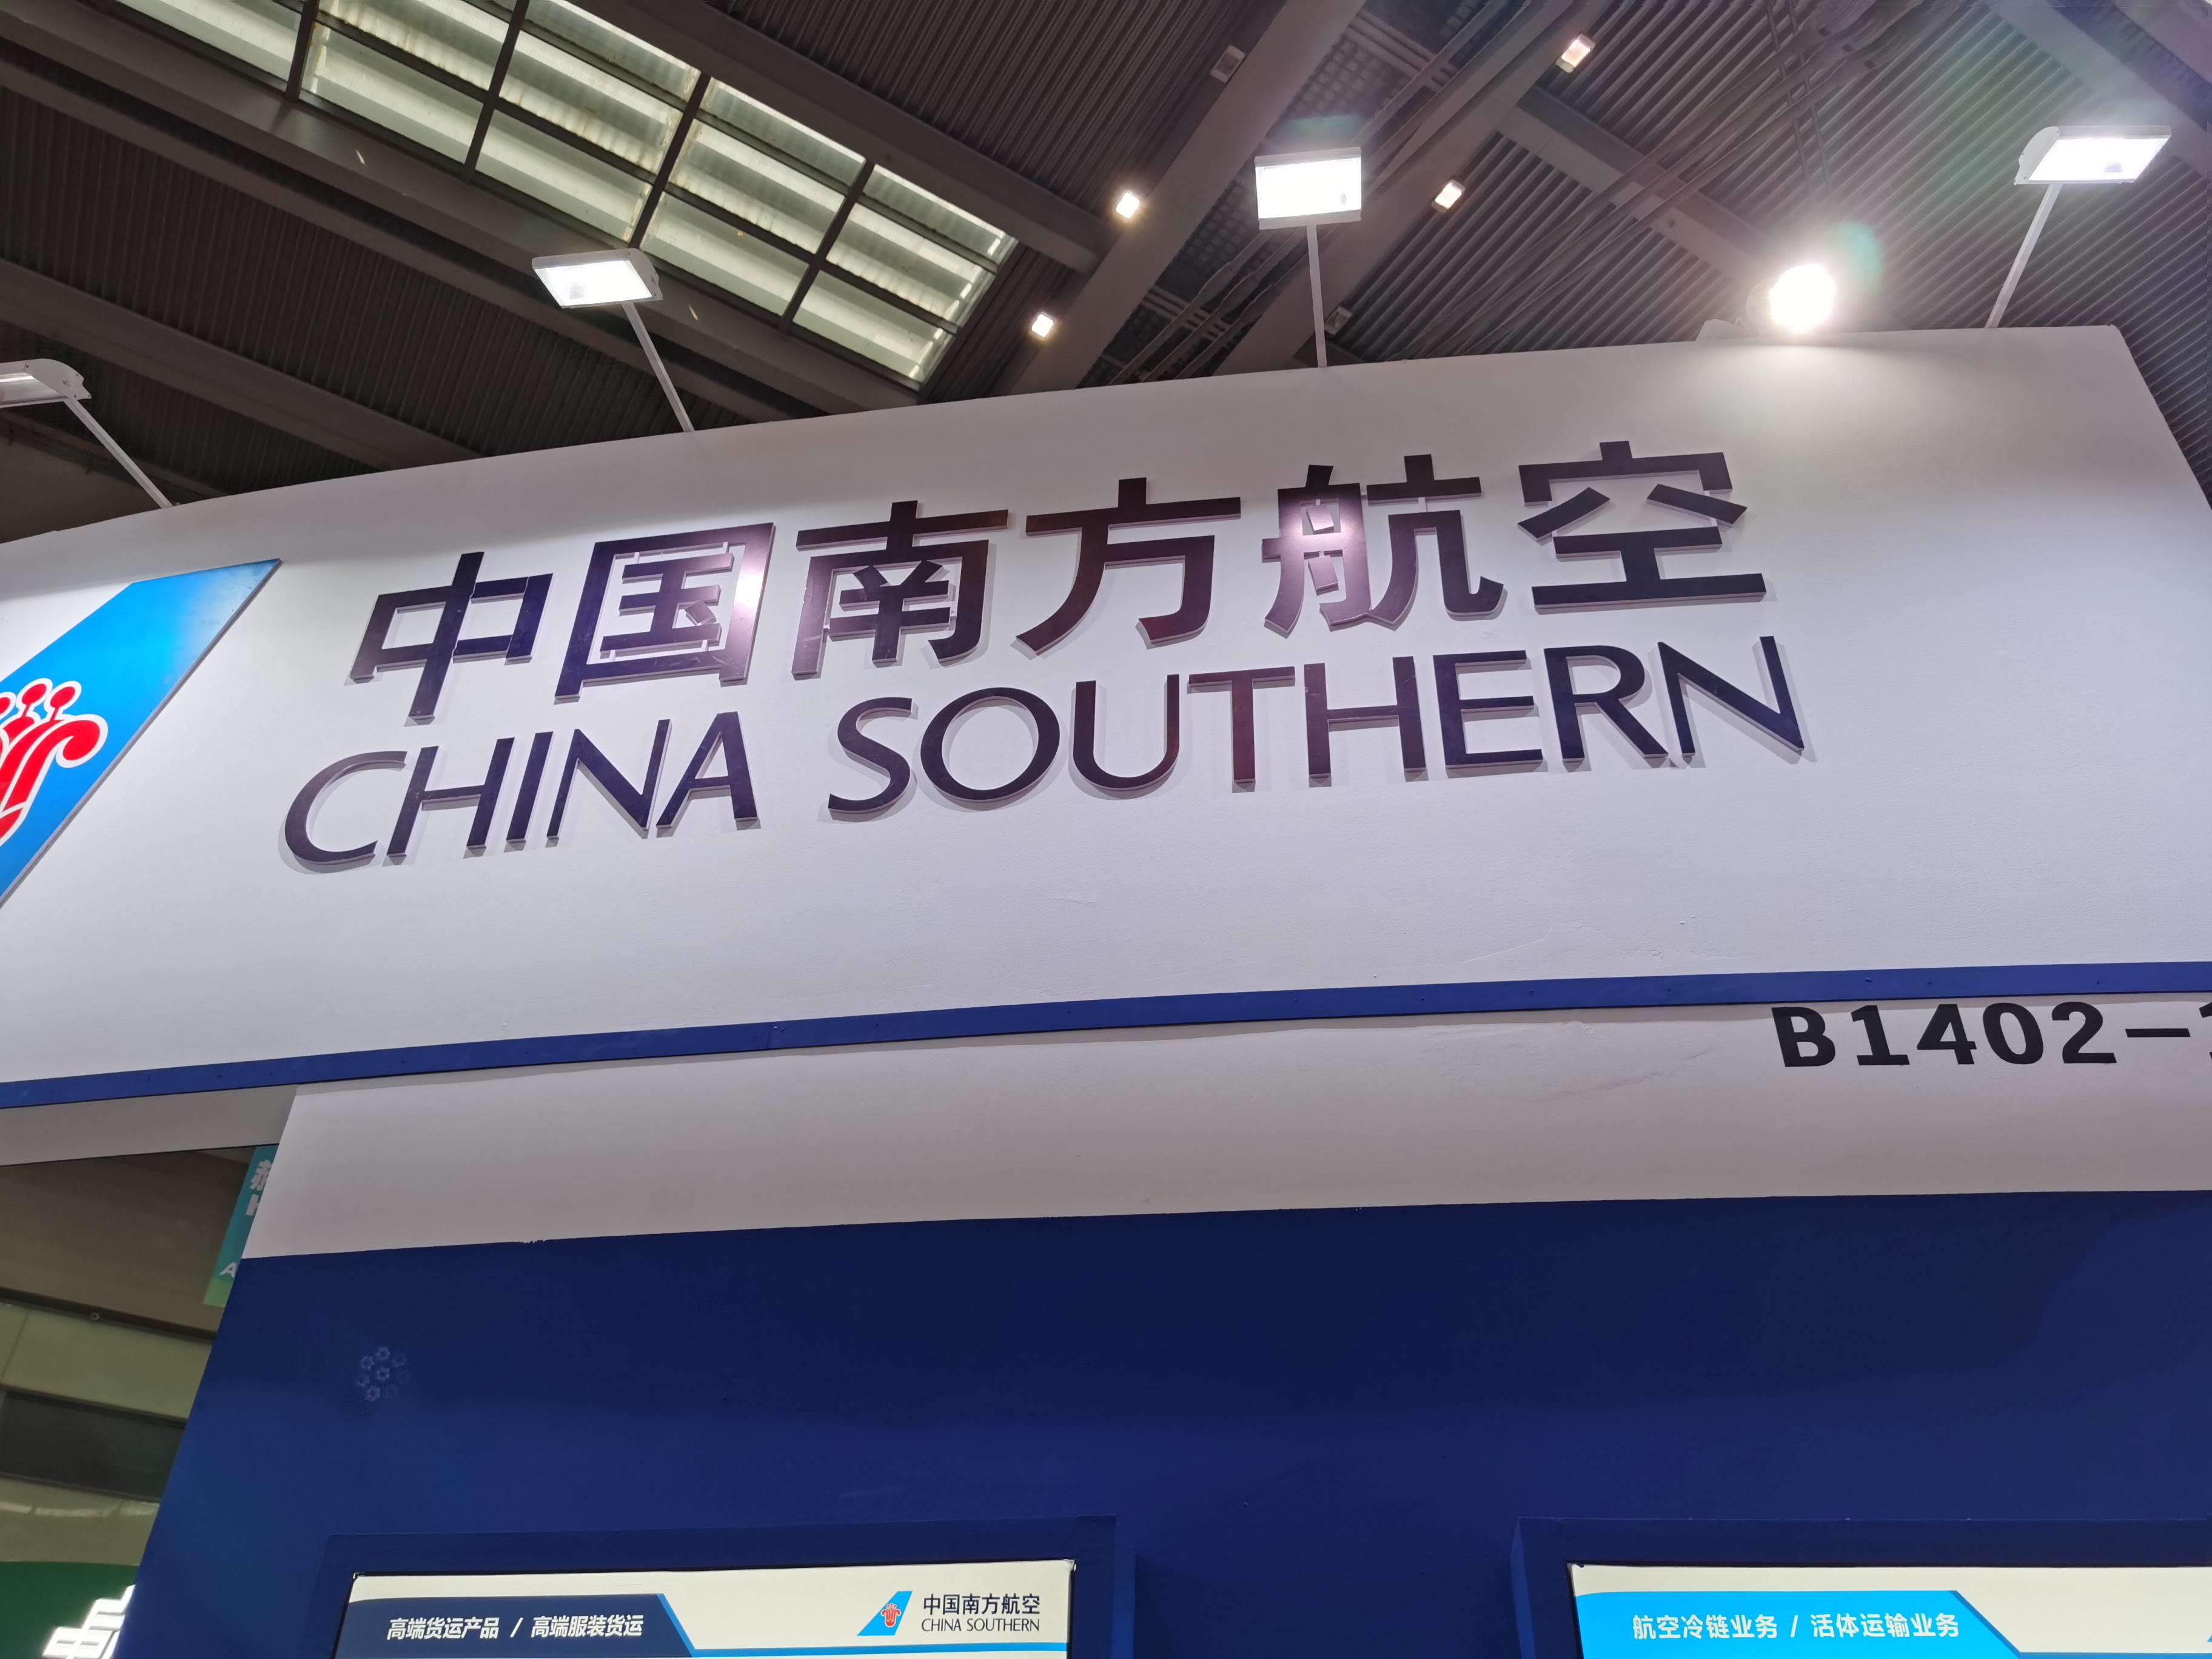 中國南方航空